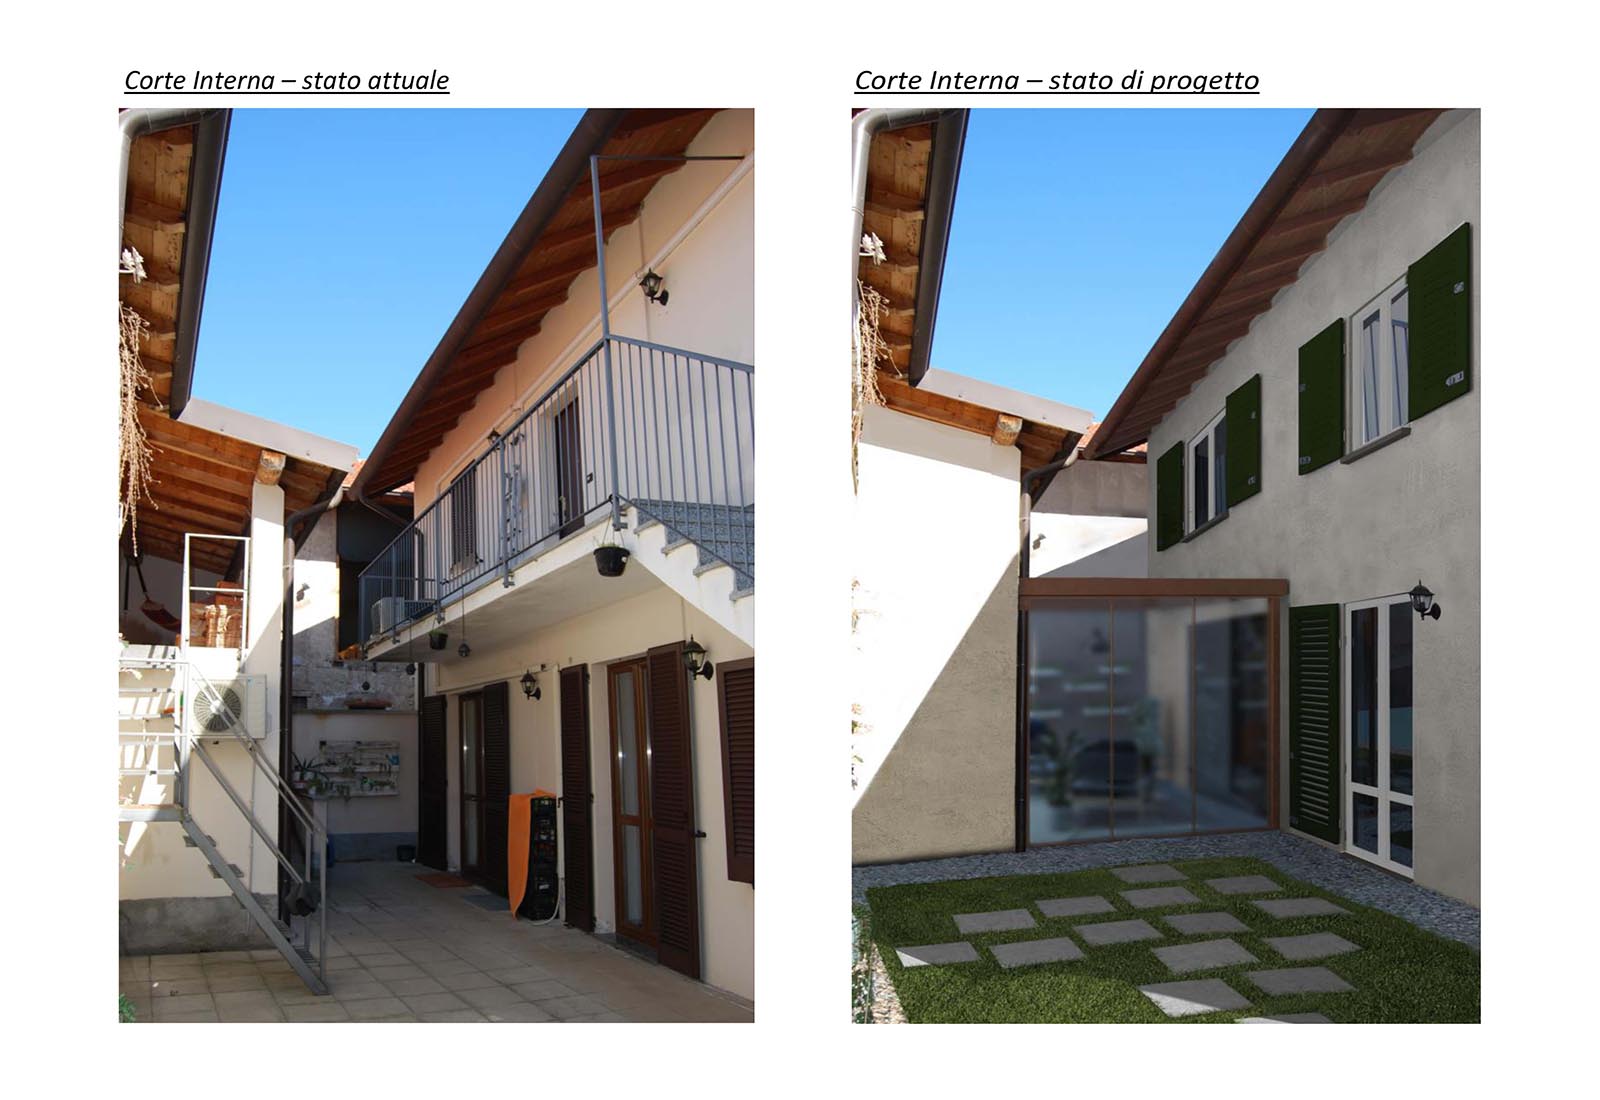 House in a courtyard in Bernate Ticino - Internal court comparison status